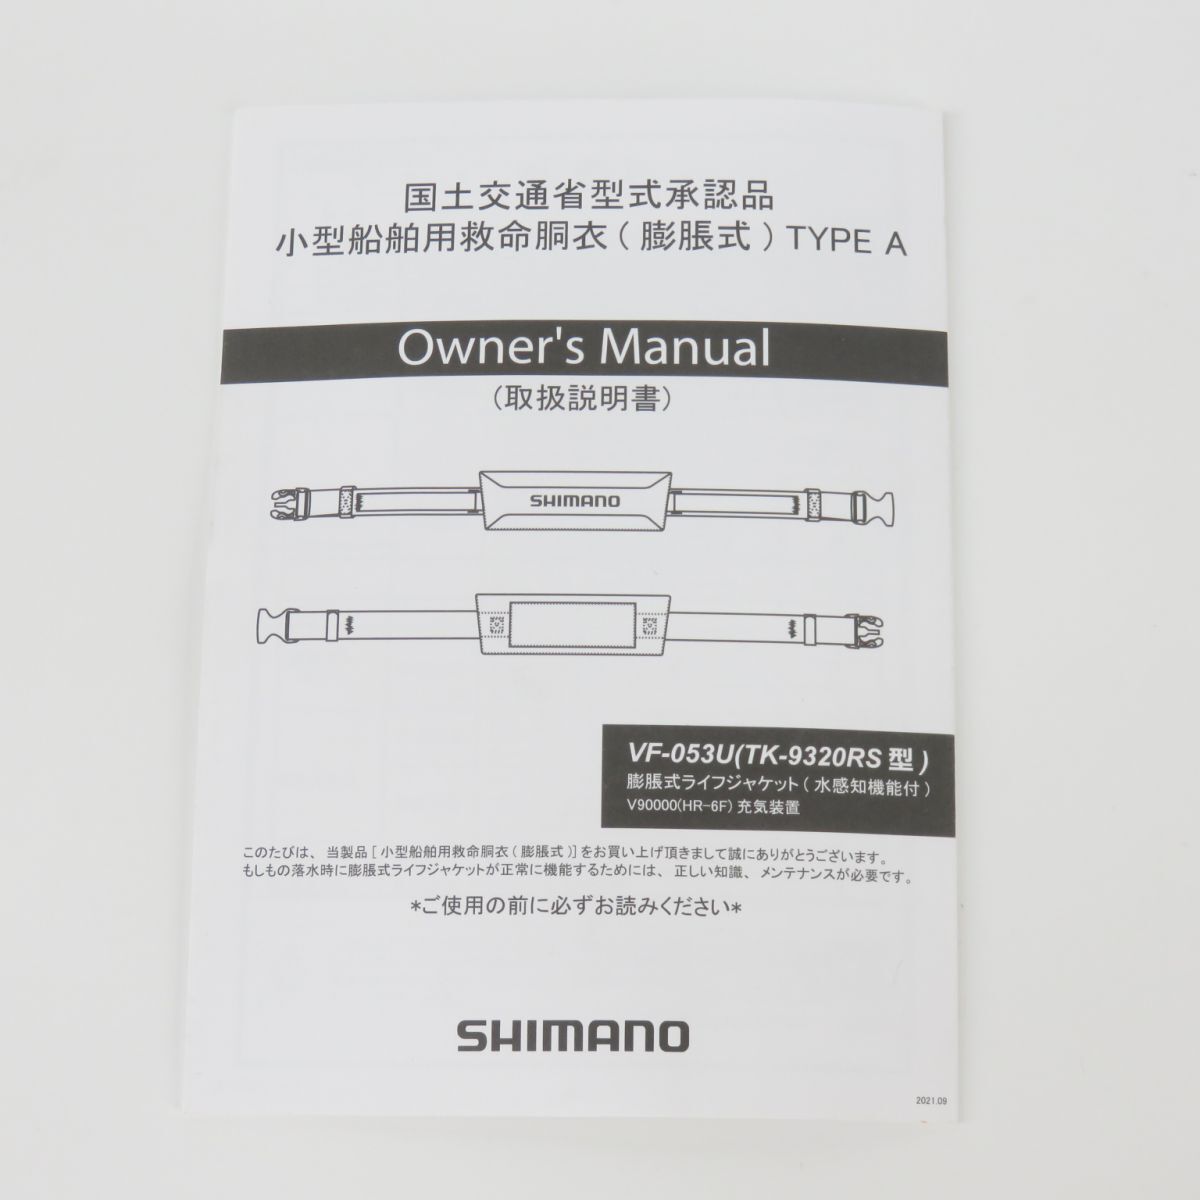 129 【未使用】SHIMANO シマノ VF-053U ラフトエアジャケット (コンパクトタイプ・膨脹式救命具) フリー グレー TYPE-A 桜マークの画像7